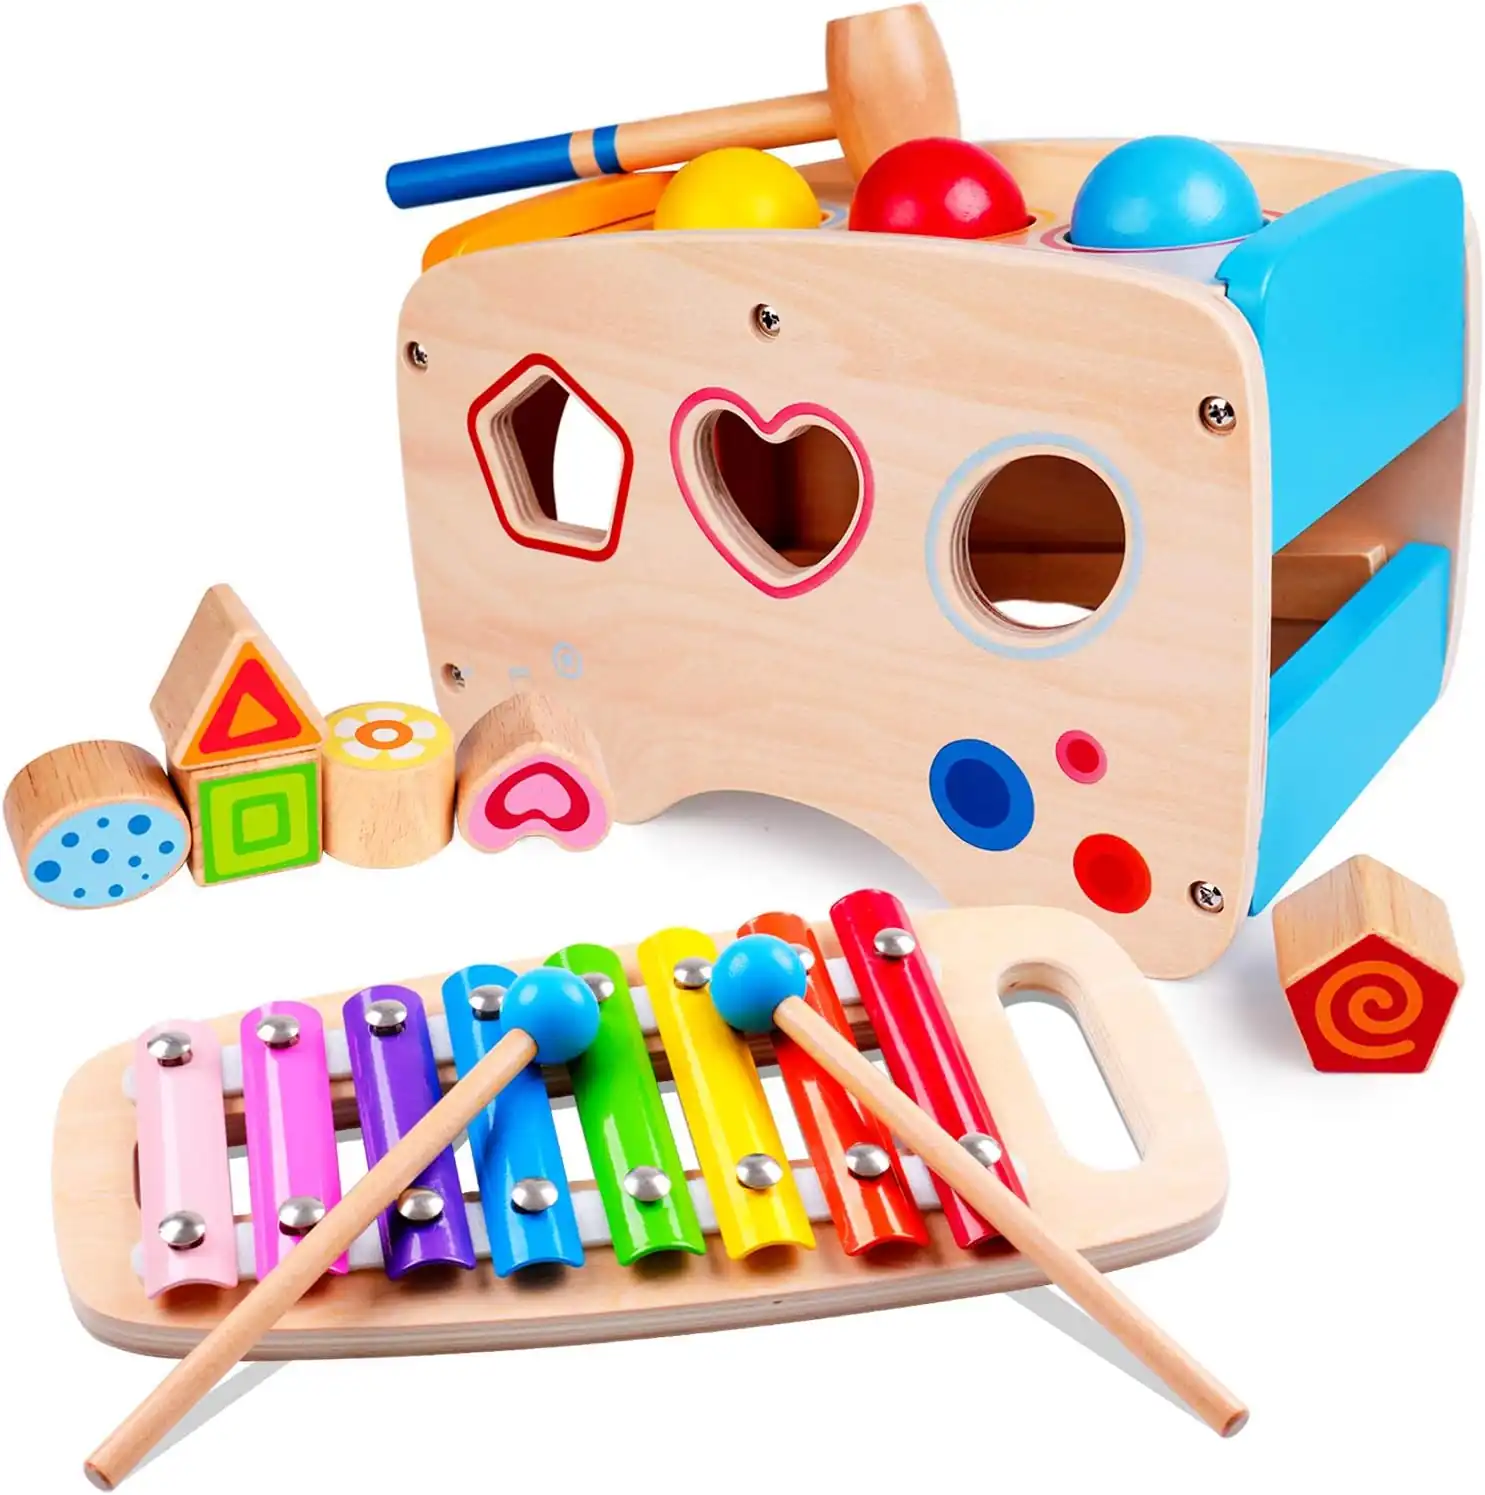 Juguete Rolimate musical con percusión de madera para niños de 1 a 4 años